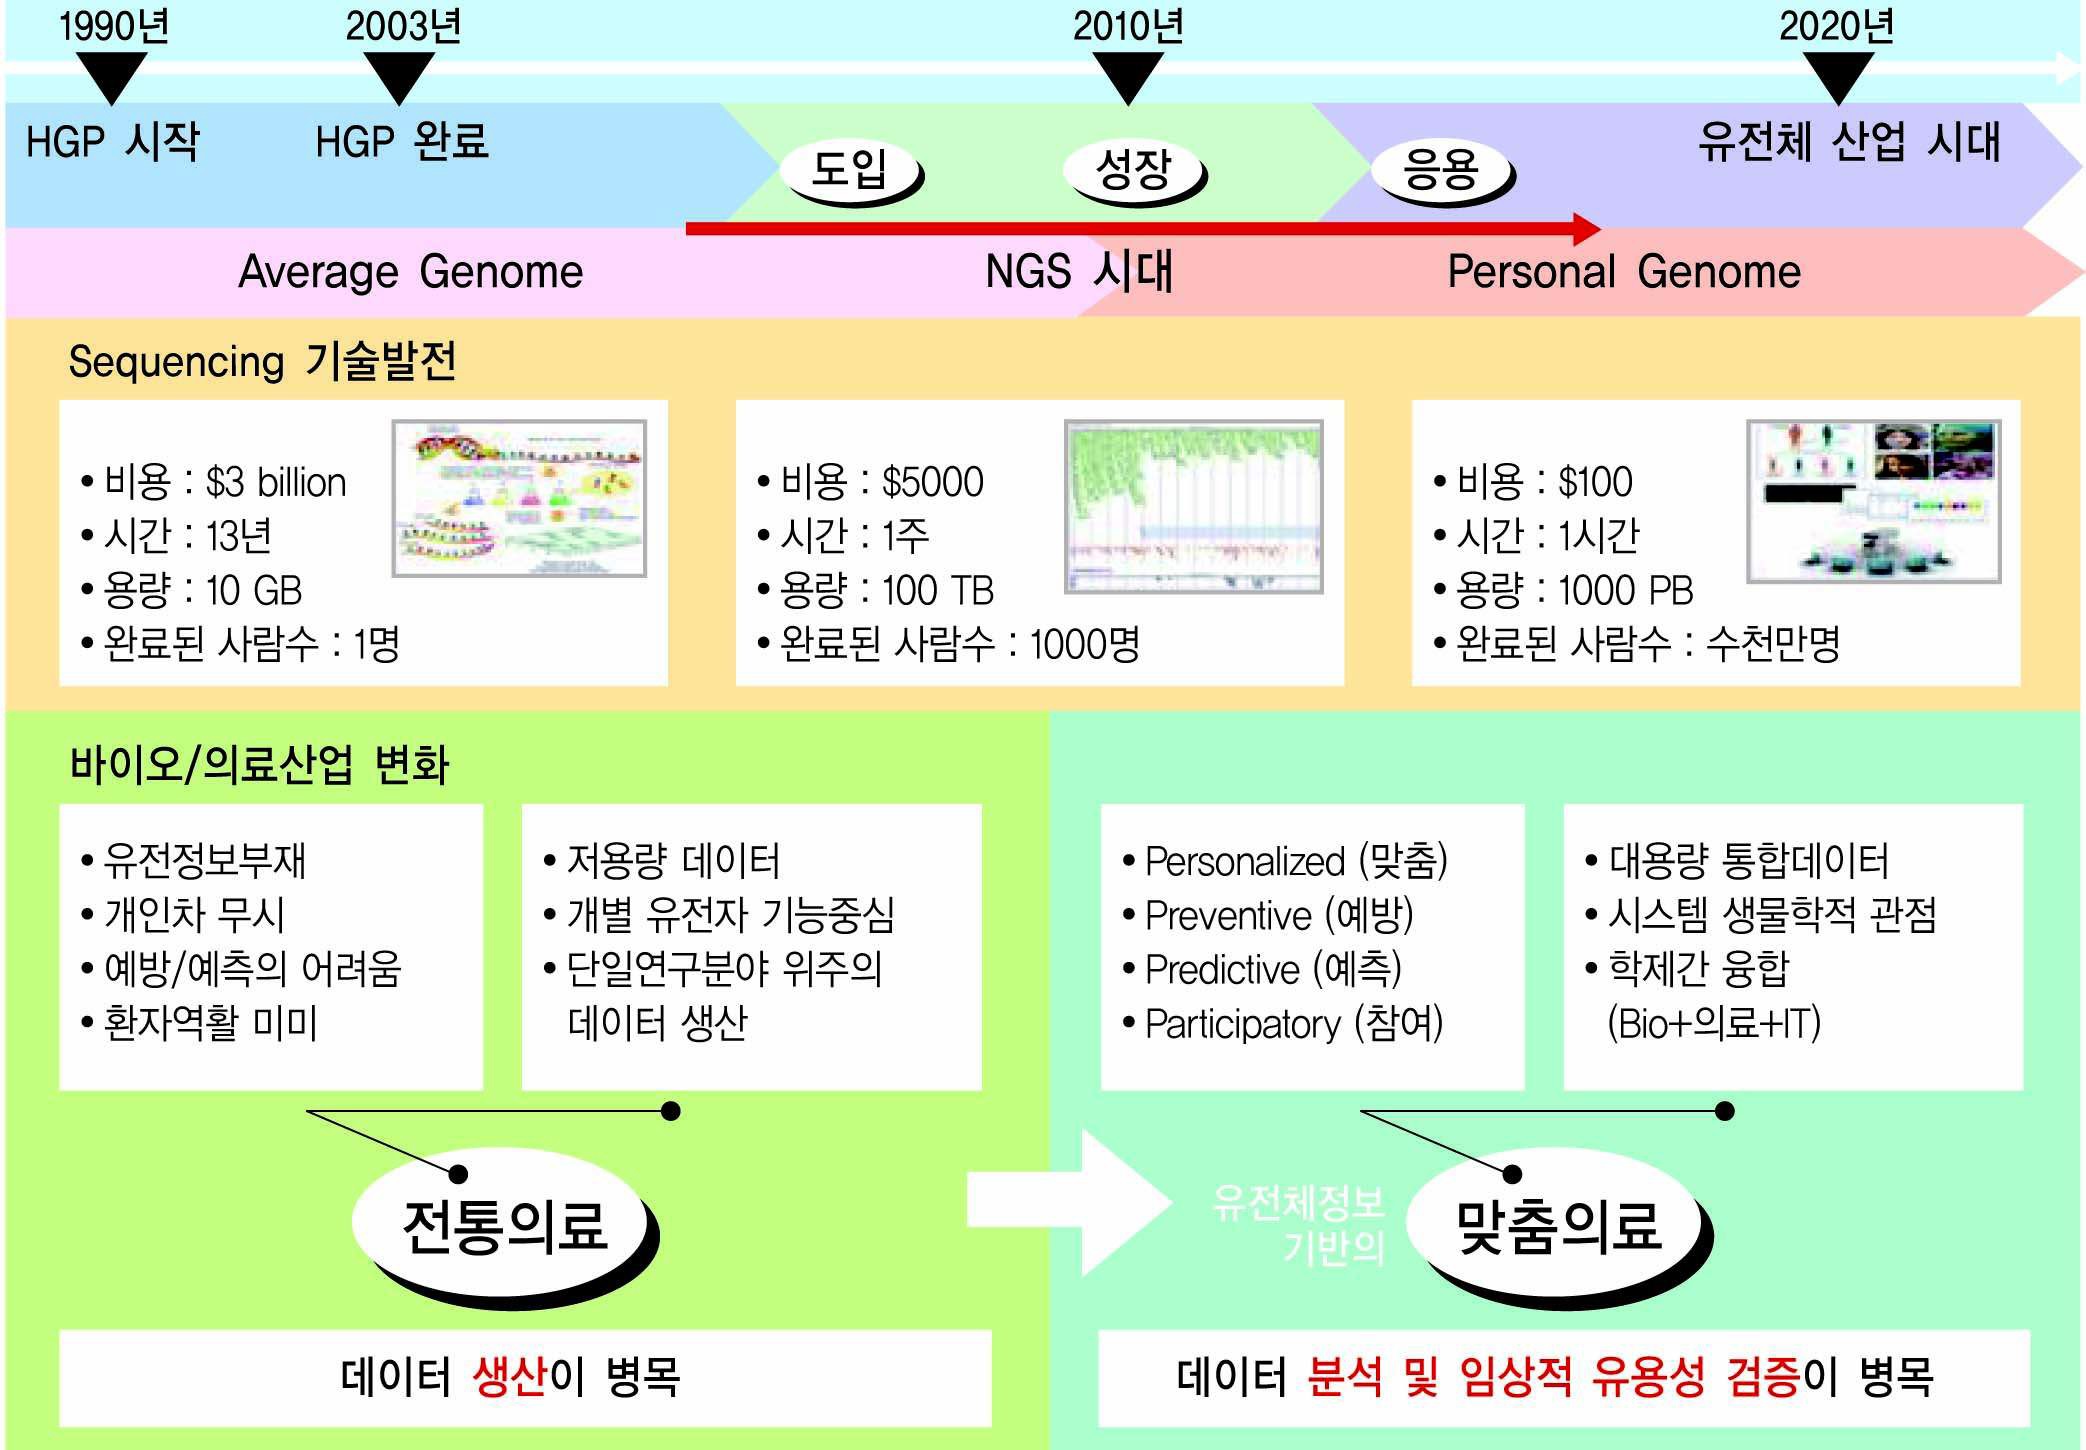 유전체 기술의 발달에 따른 개인 유전체 시대와 생물정보데이터의 활용 모델